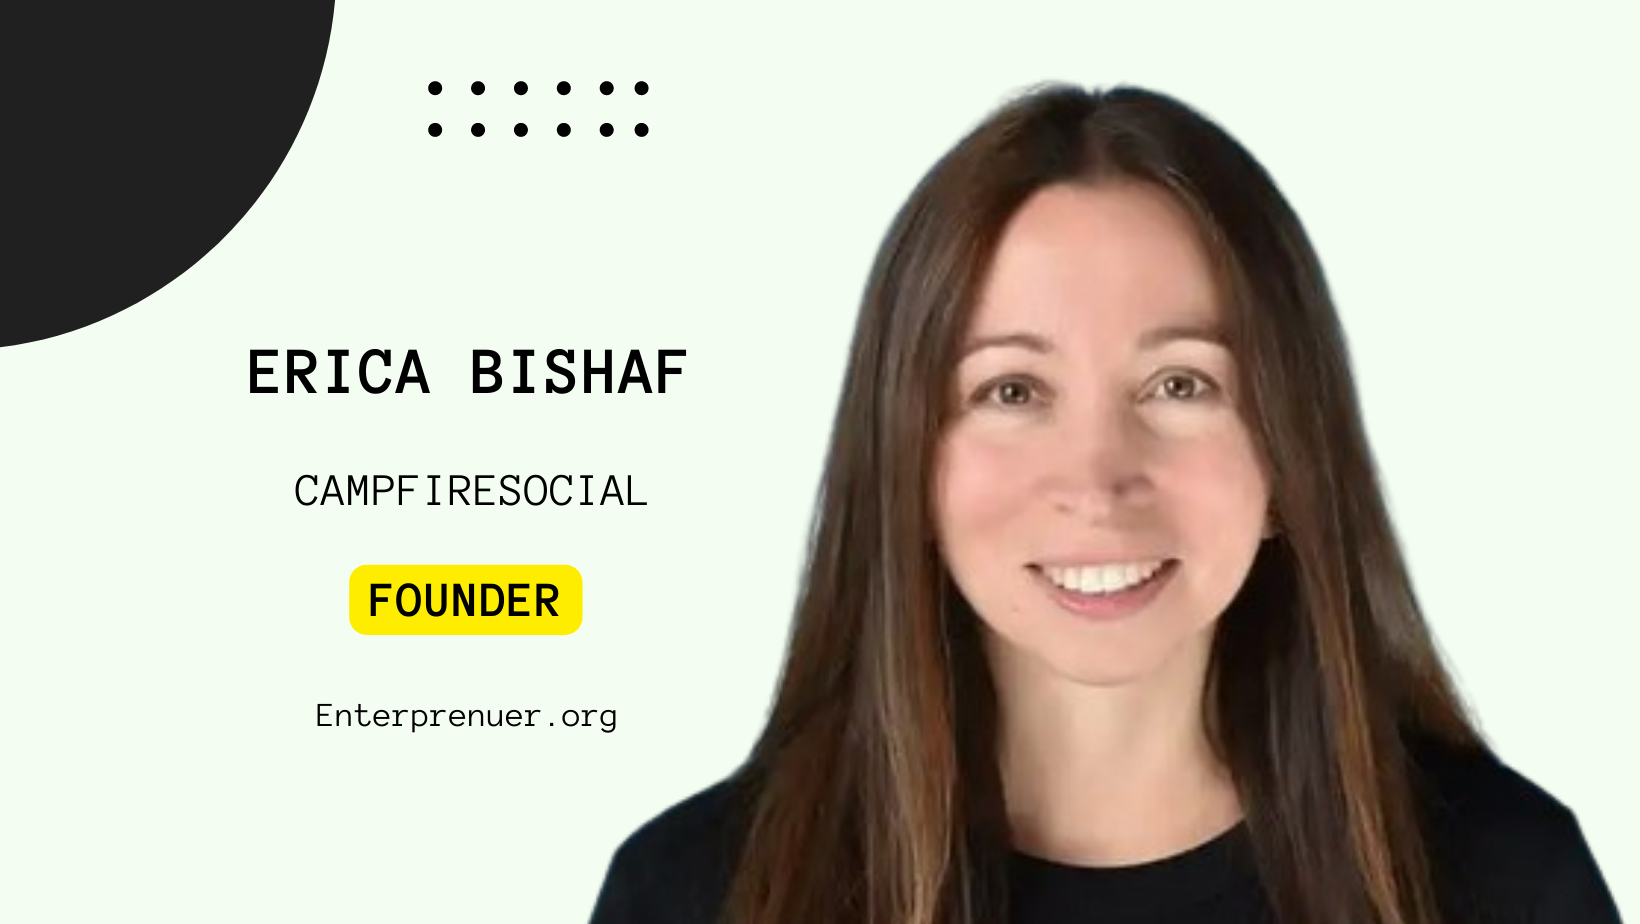 Erica Bishaf Founder of CampfireSocial